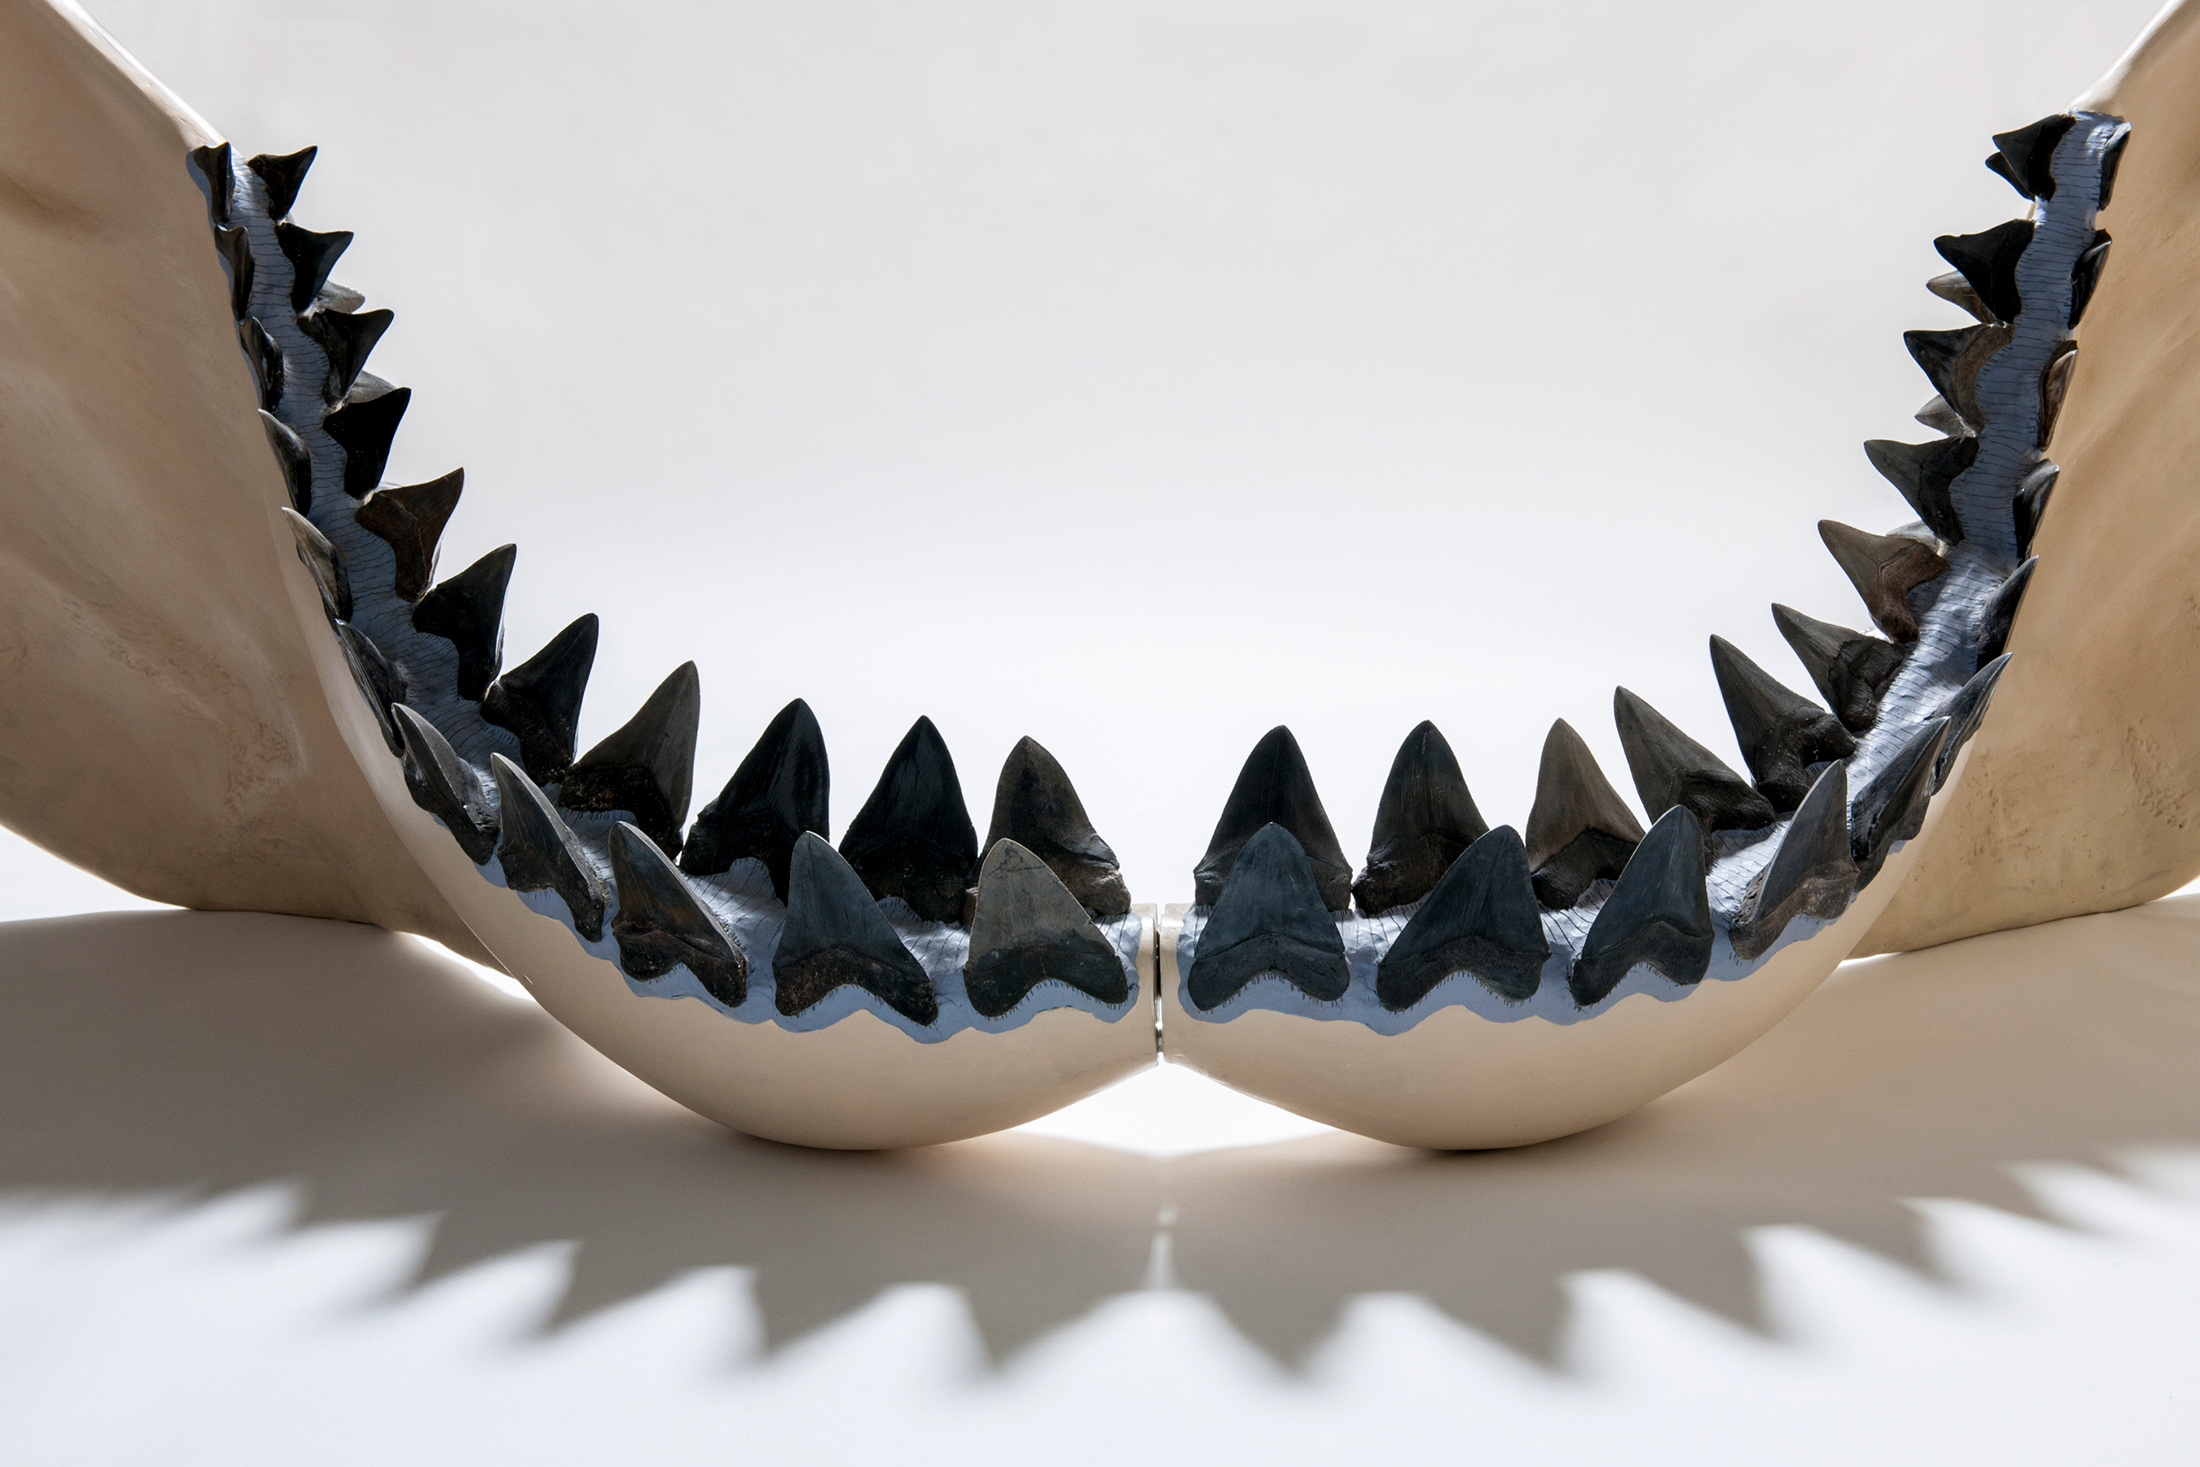 Las mandíbulas de los tiburones están hechas de cartílago. FOTO DEL MUSEO DE FLORIDA POR KRISTEN GRACE